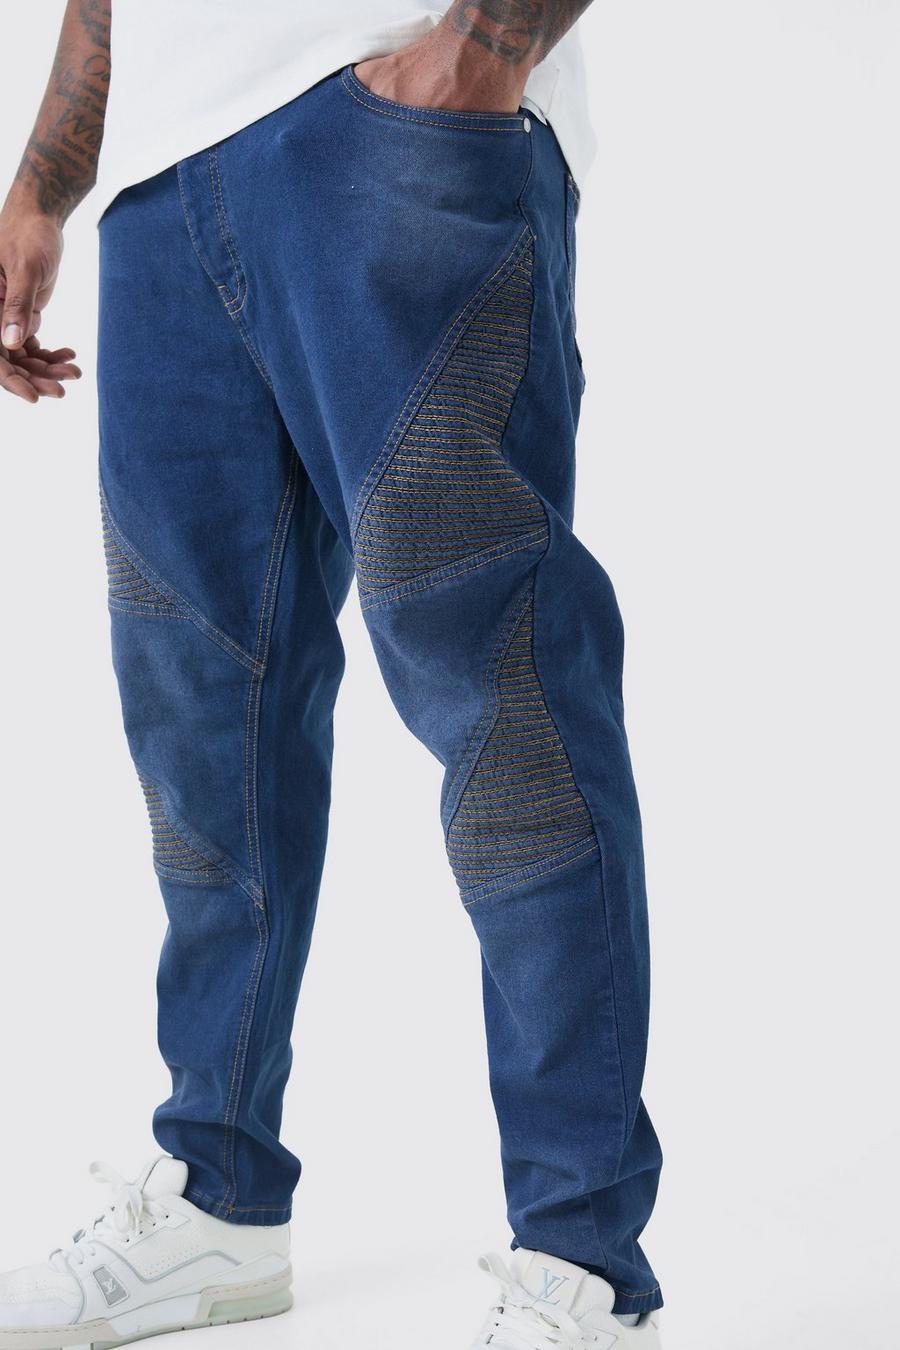 Jeans stile Biker Plus Size Skinny Fit oversize in tinta unita, Grey blue